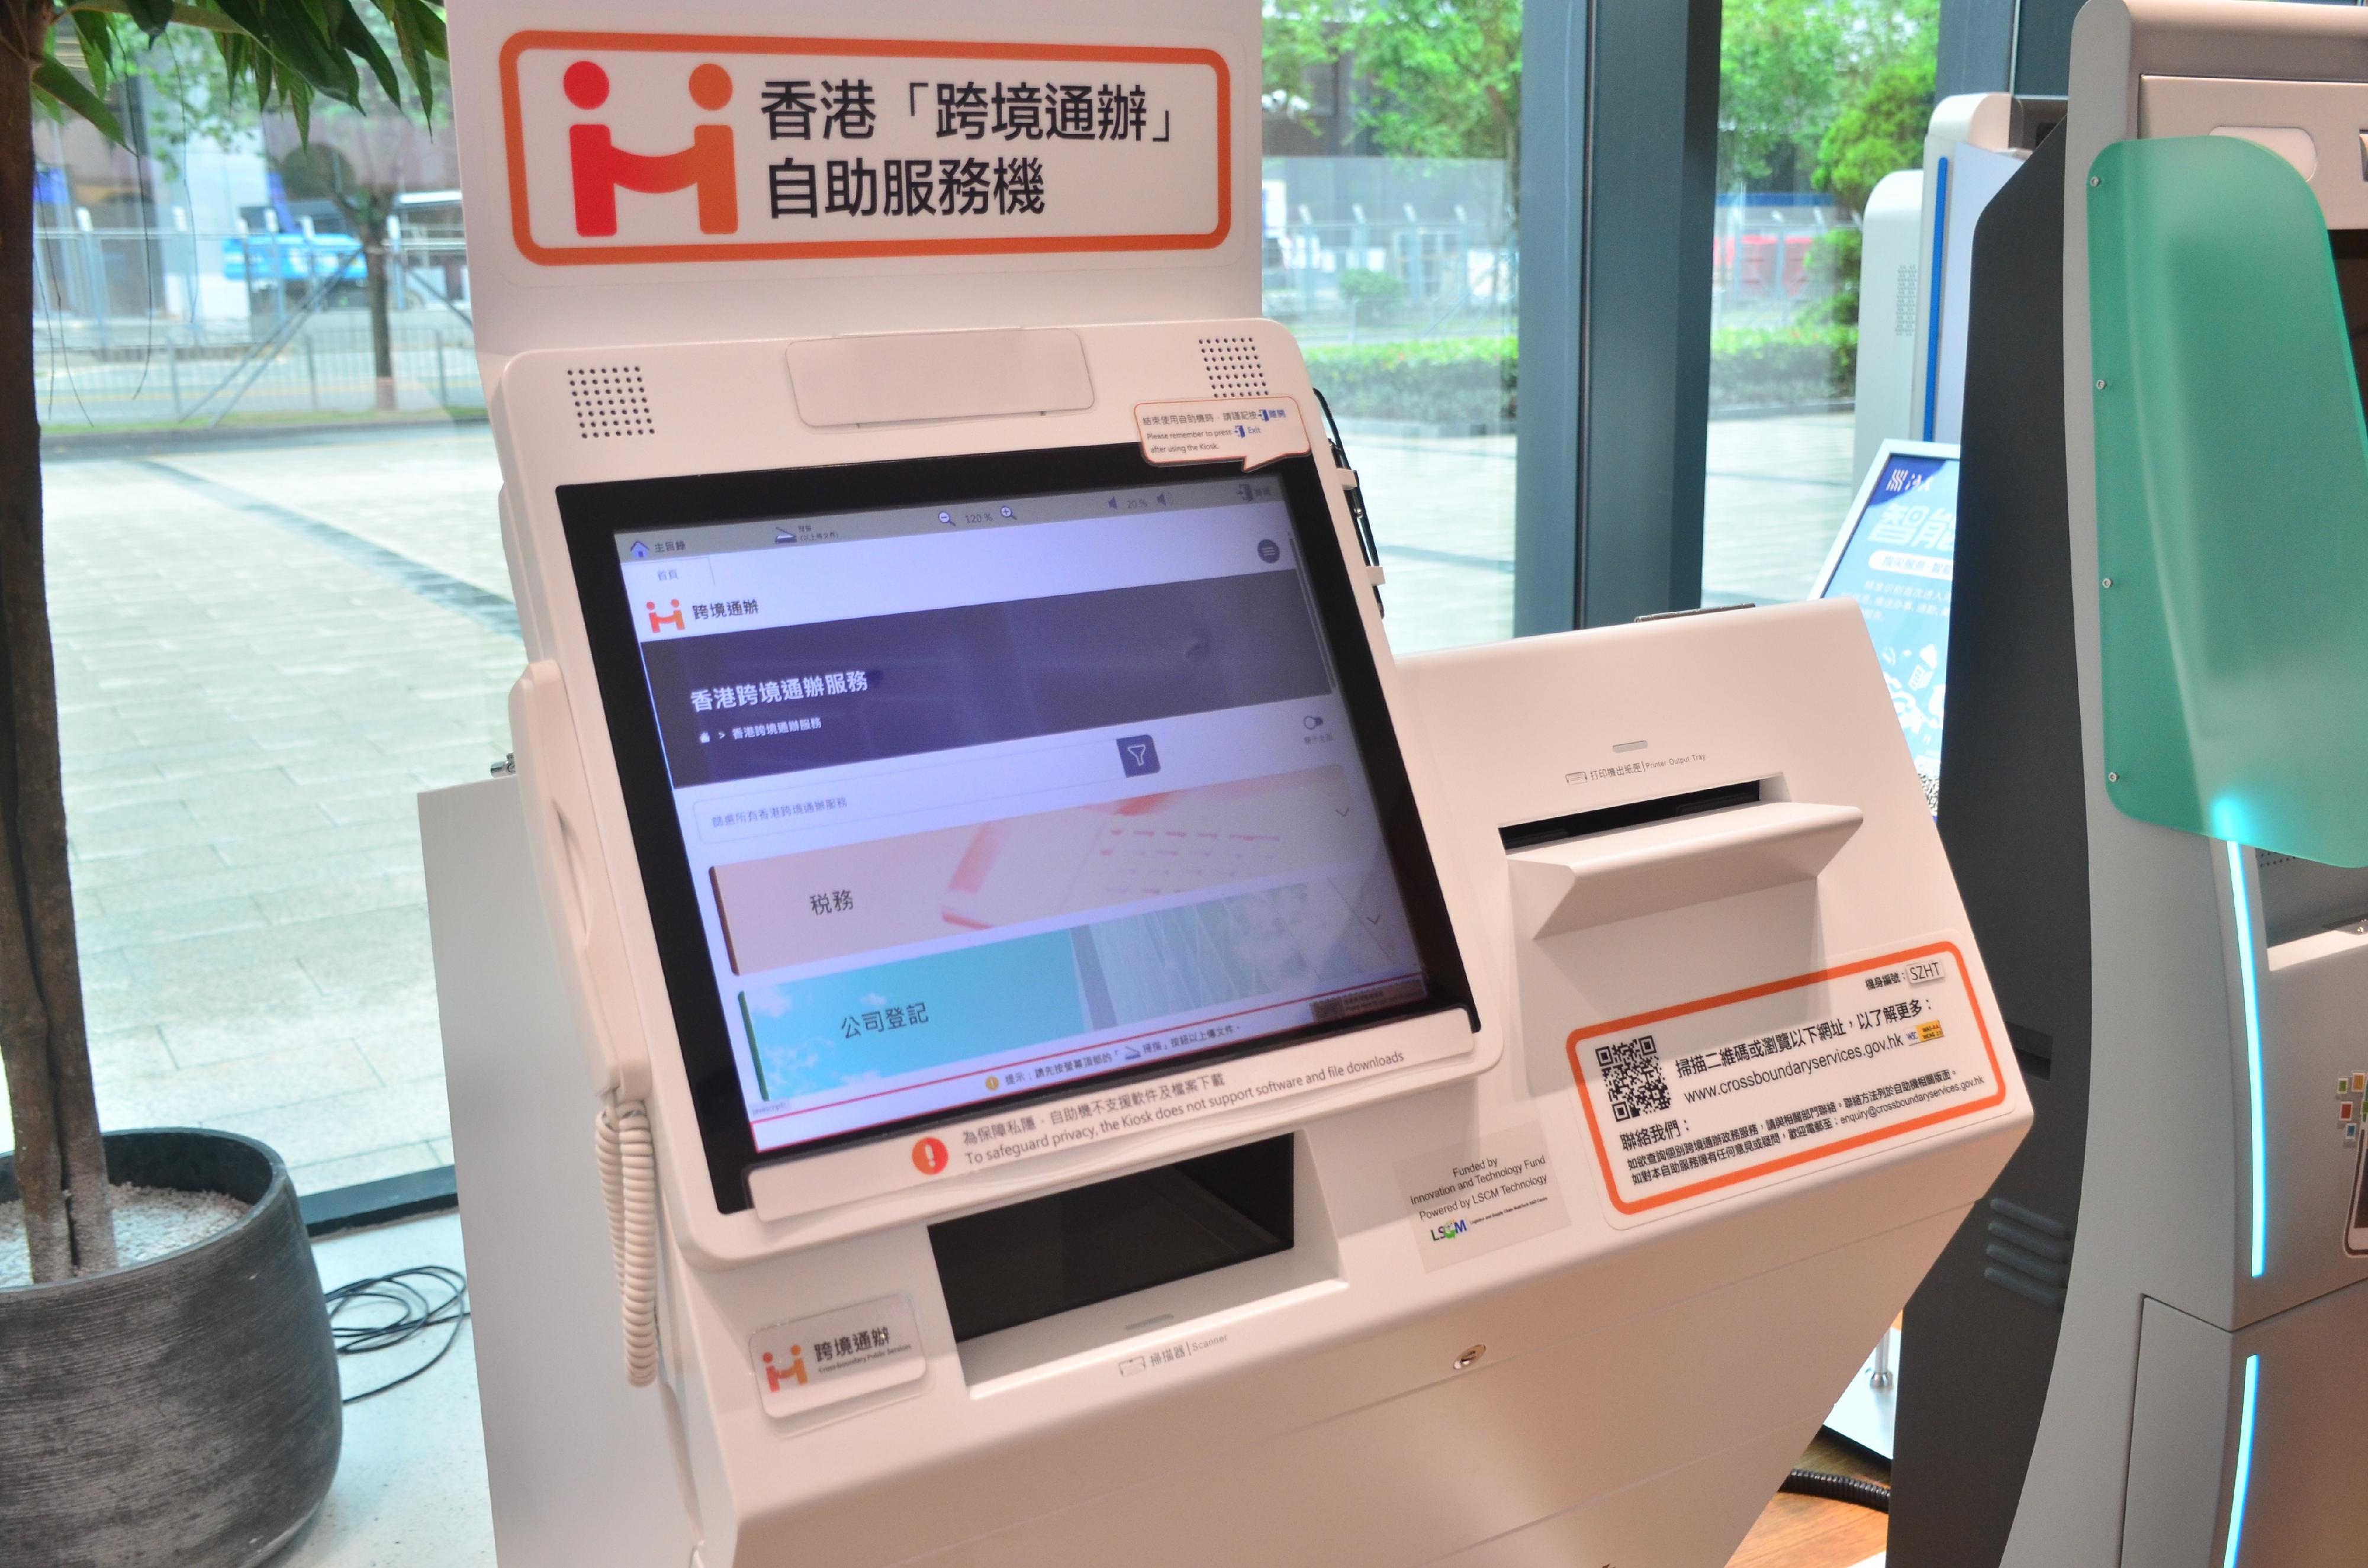 「跨境通辦」自助服務機現時提供超過60項政務服務，市民可通過自助服務機輸入資料、掃瞄文件和列印結果，一站式申辦各項香港政務服務。